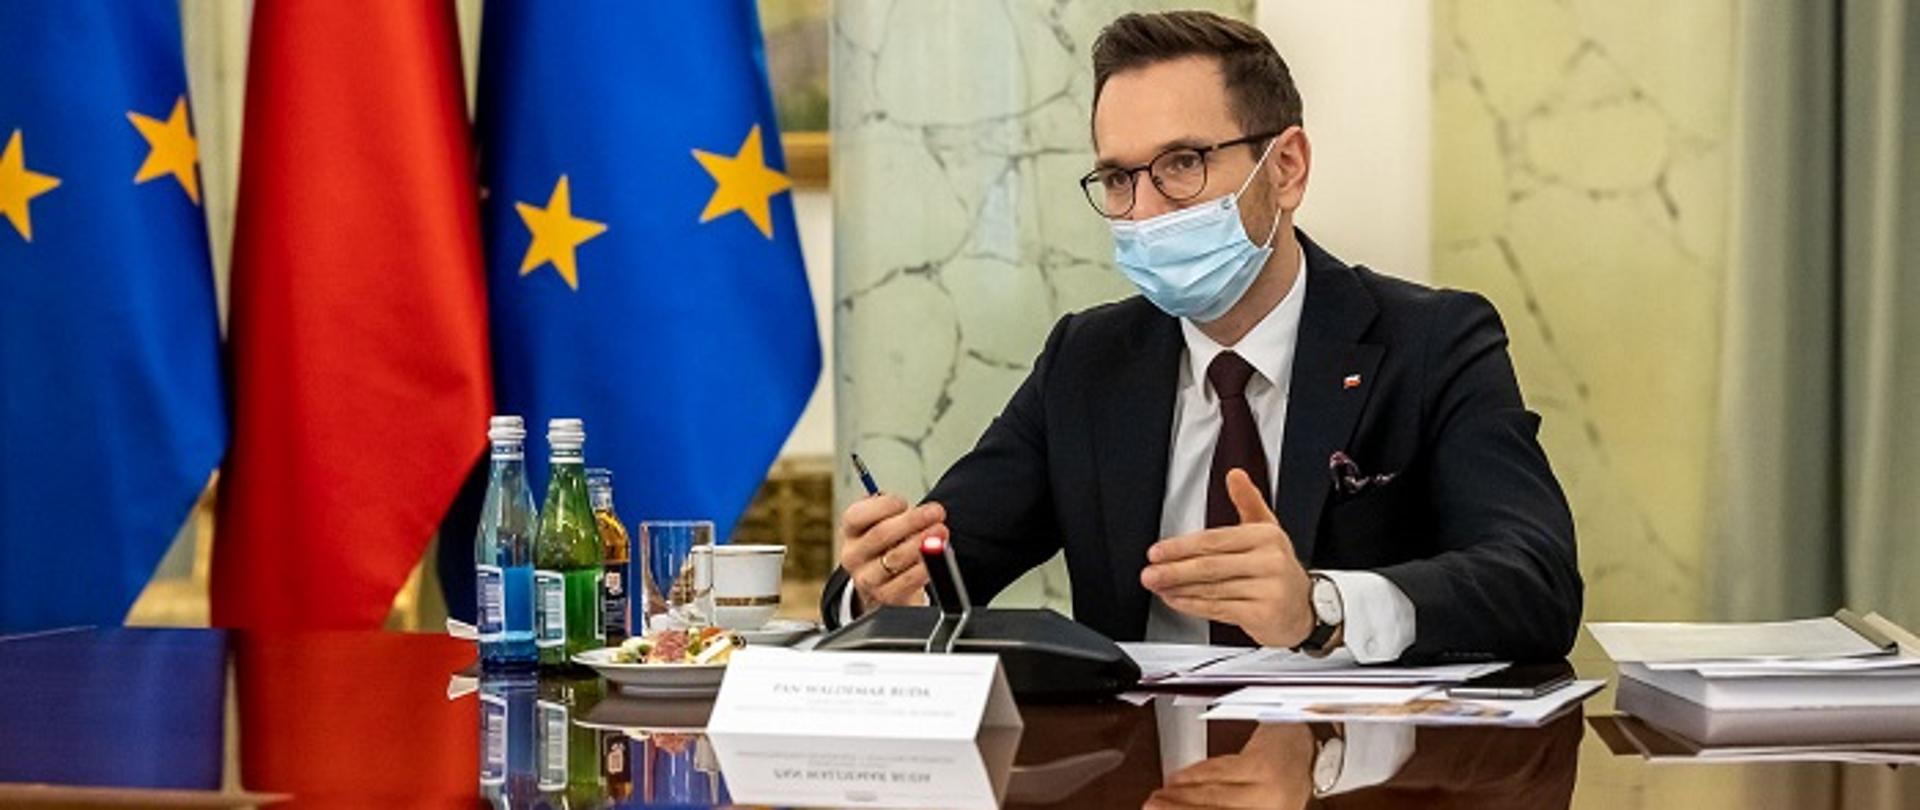 Wiceminister Waldemar Buda siedzi przy stole konferencyjnym, przed nim dokumenty i mikrofon, za nim flagi Polski i Unii Europejskiej